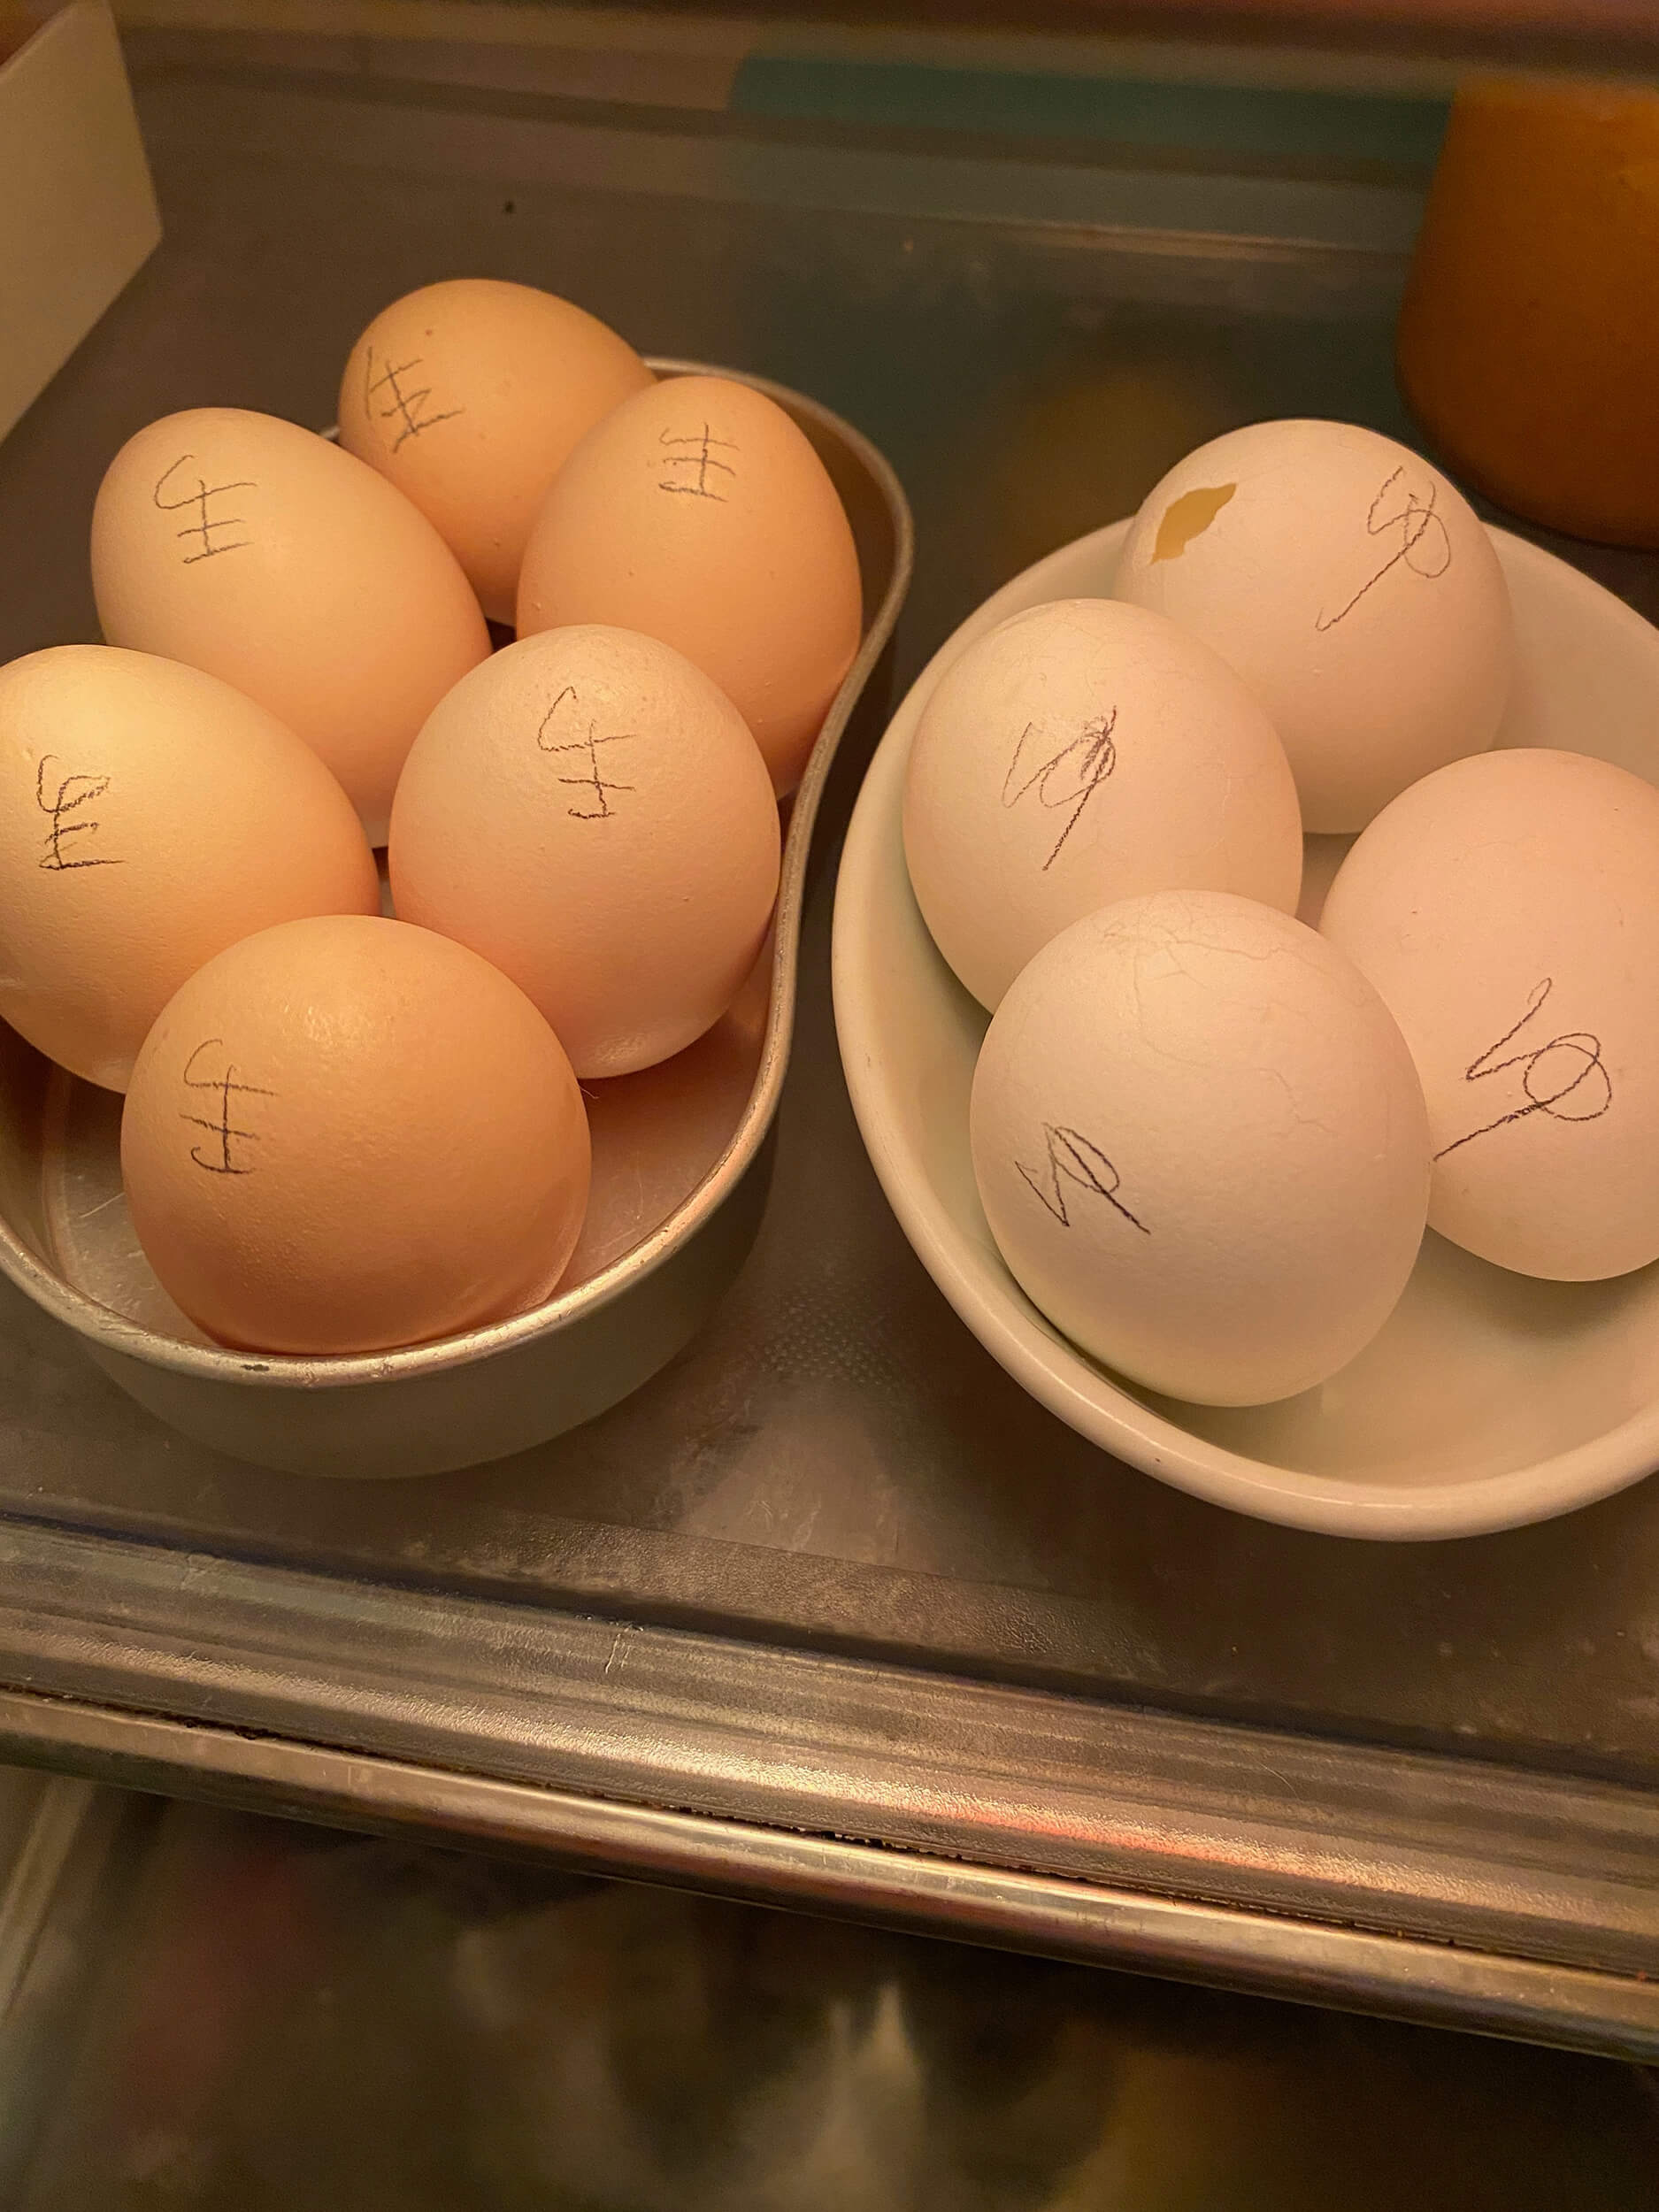 間違えないように卵に生印、ゆ印を書いてしまう